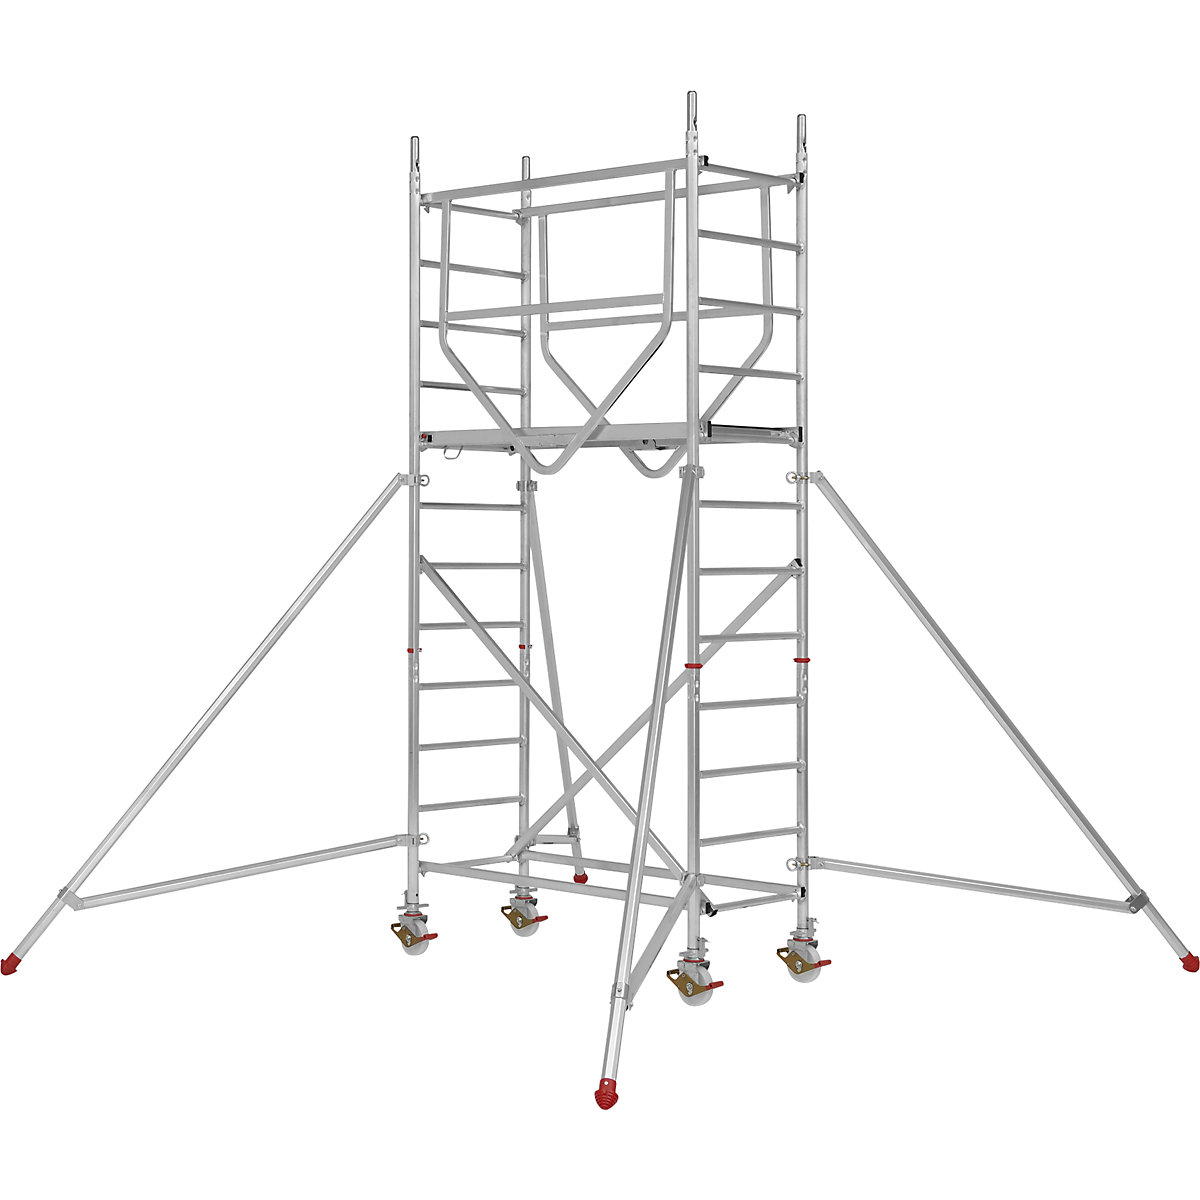 Trabattello mobile ADVANCED SAFE-T 7070 – HYMER, saldato, piattaforma 1,58 x 0,61 m, modulo 1+kit+set di stabilizzatori-4